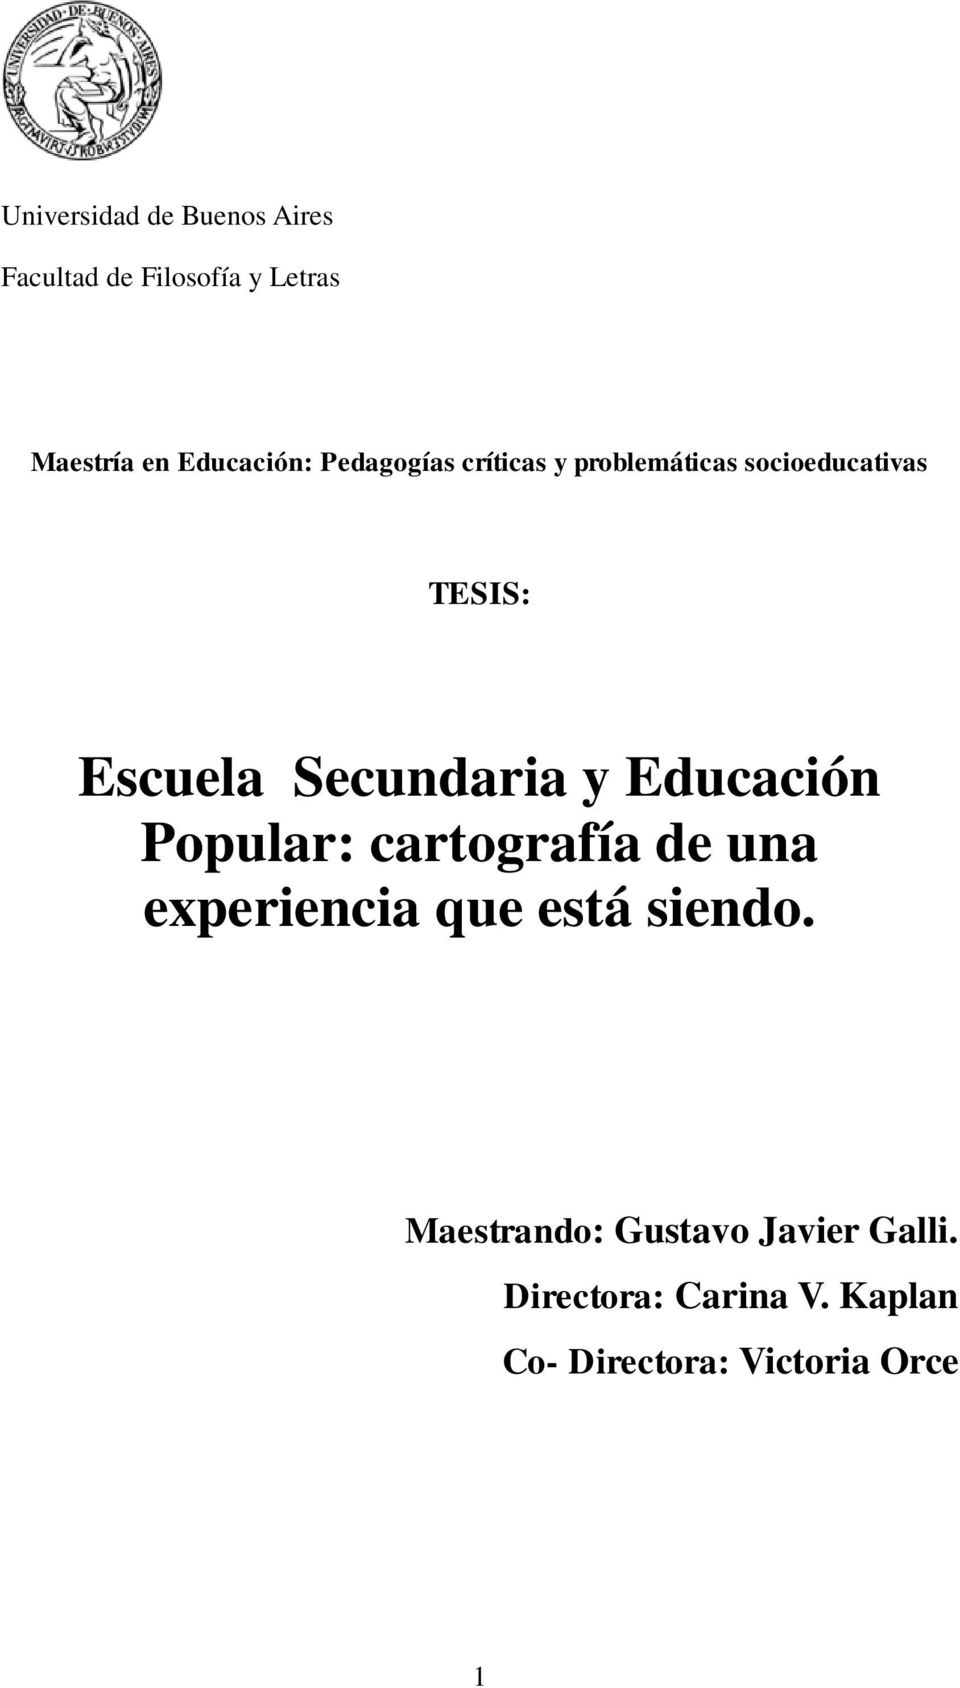 Secundaria y Educación Popular: cartografía de una experiencia que está siendo.